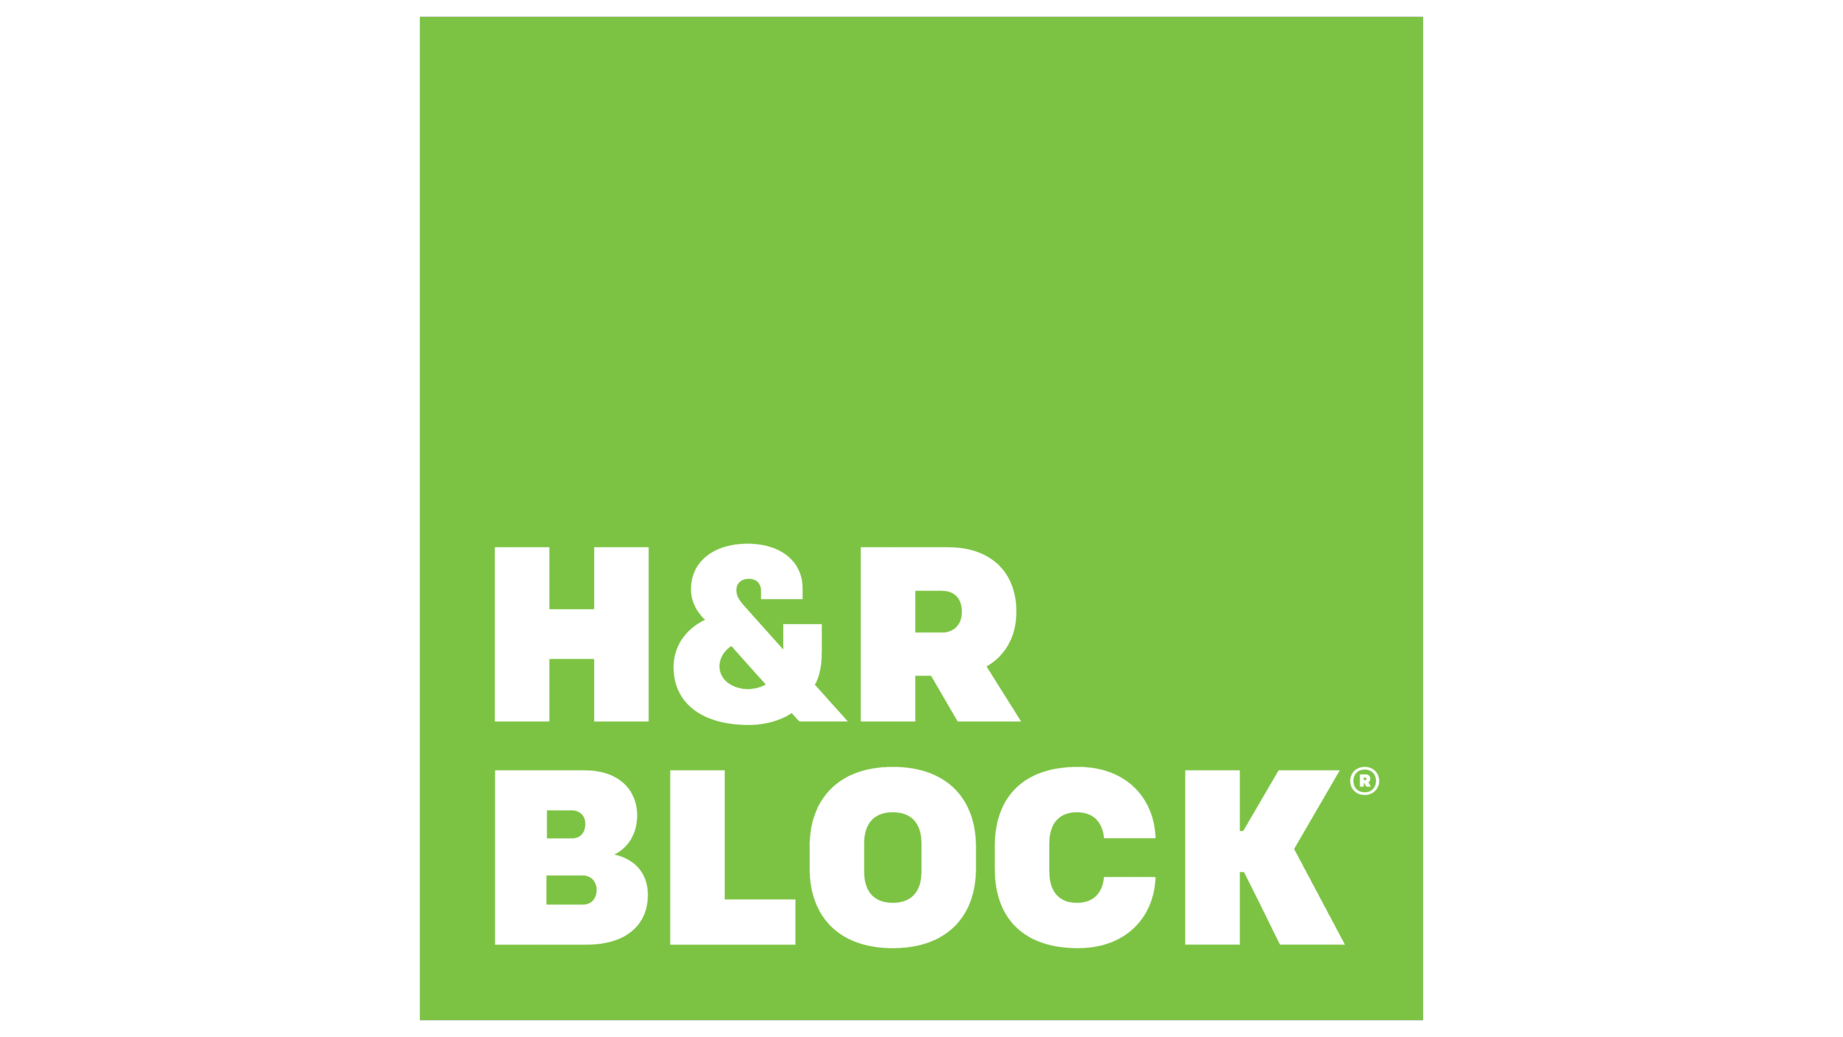 Hr block sign